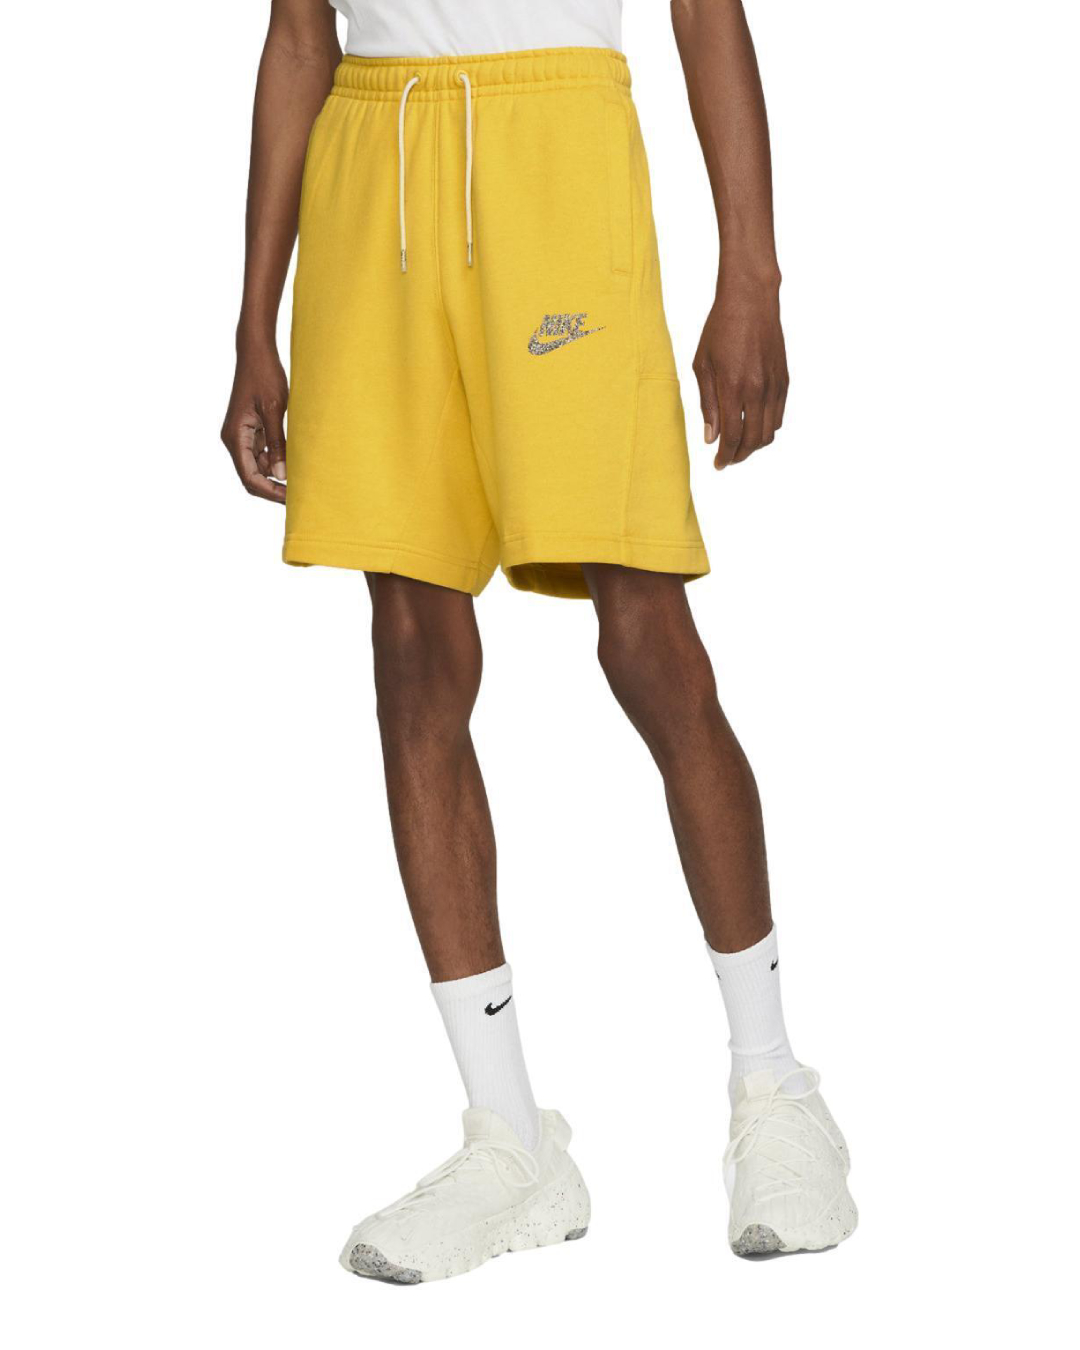 Спортивные шорты мужские Nike Nsw Revival Flc Short C DM5635-709 желтые L